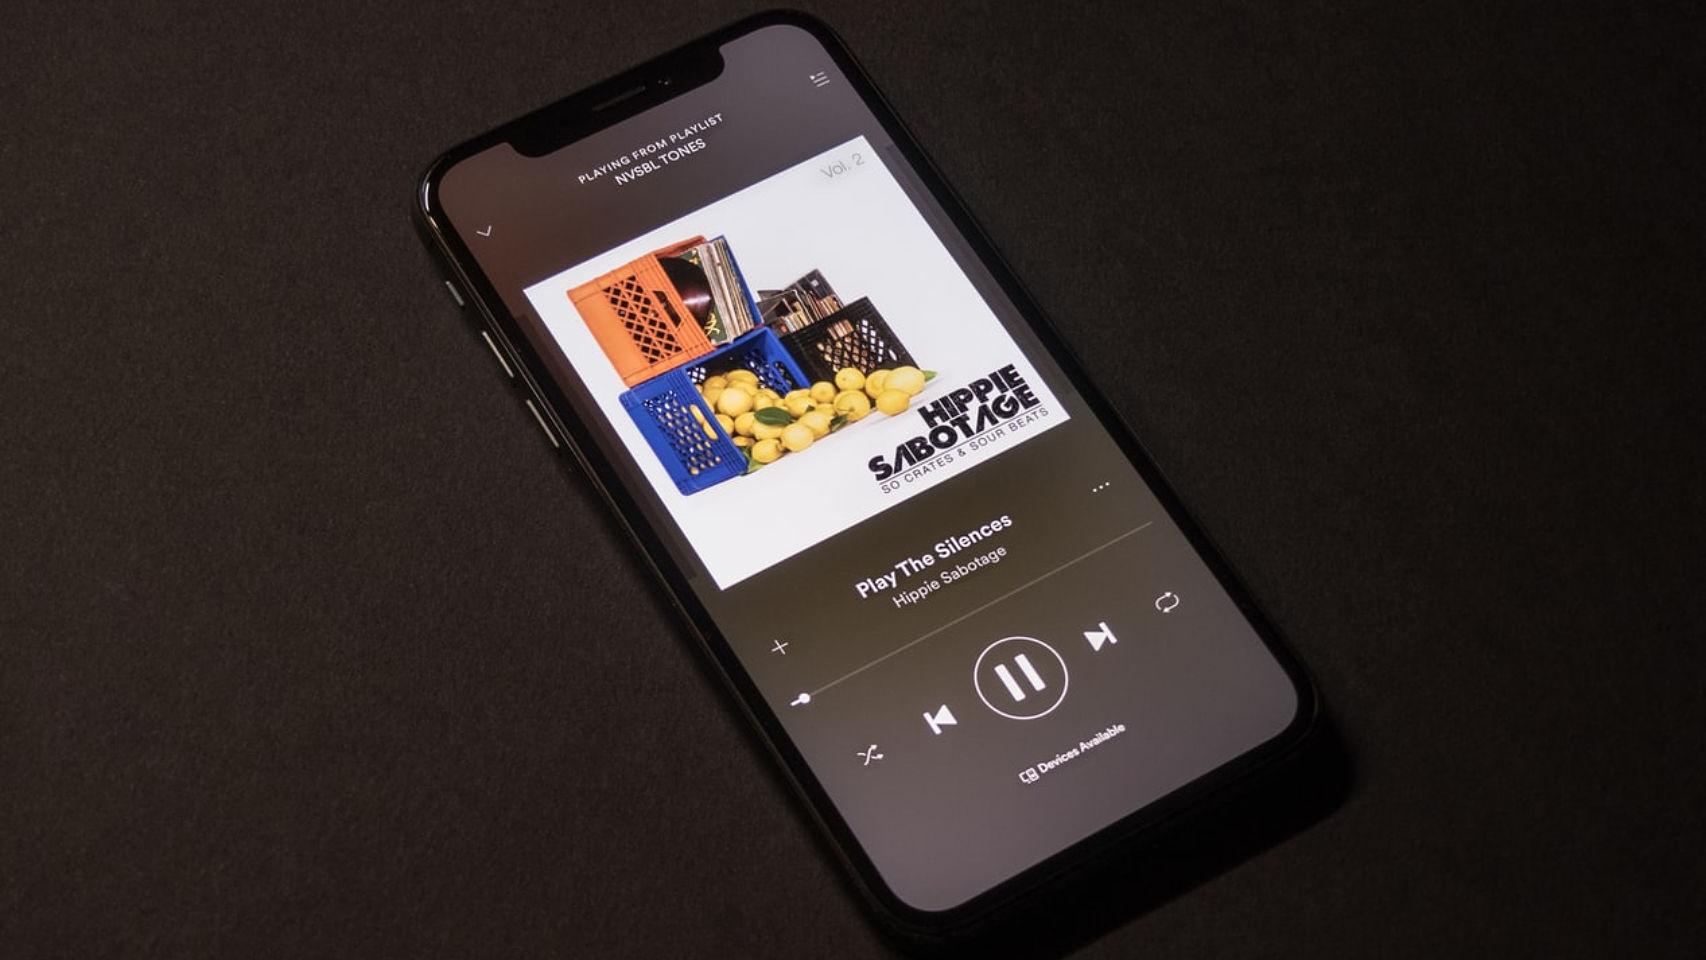 App de Spotify para móvil.